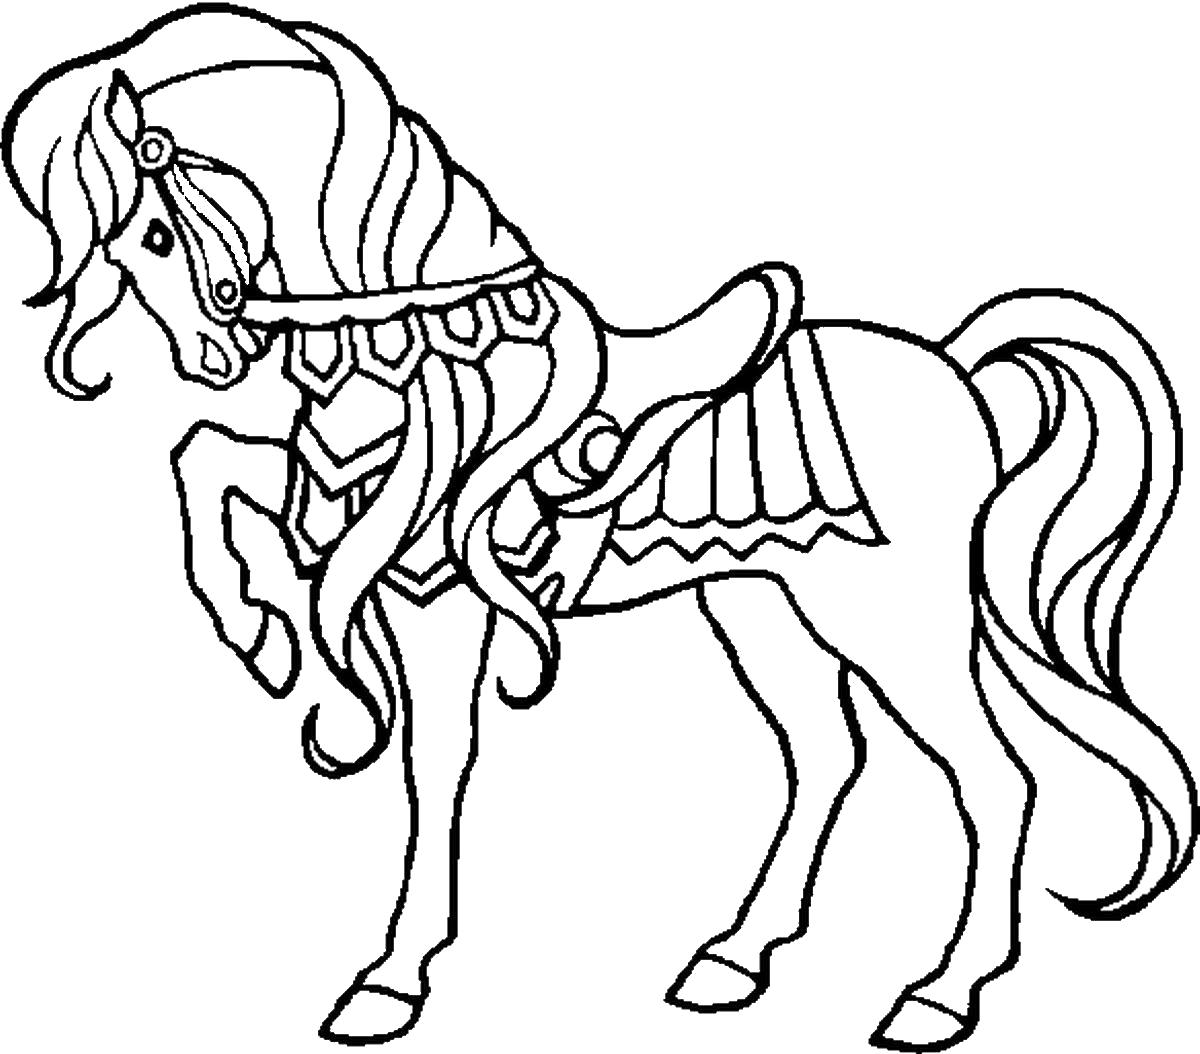 Название: Раскраска Цирковая лошадка. Категория: Домашние животные. Теги: Лошадь.